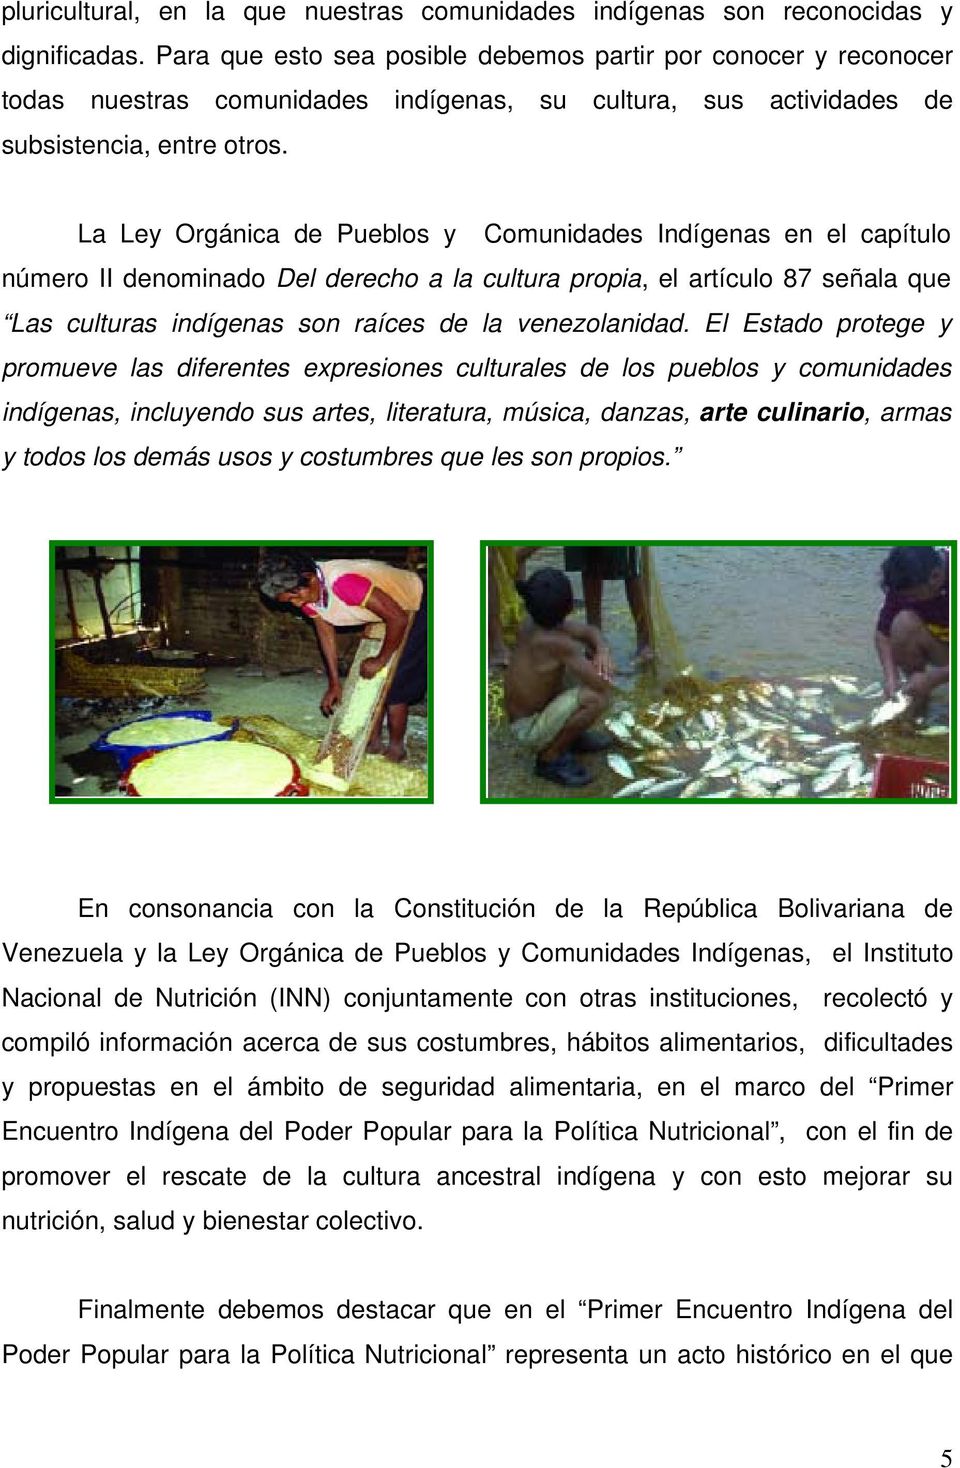 La Ley Orgánica de Pueblos y Comunidades Indígenas en el capítulo número II denominado Del derecho a la cultura propia, el artículo 87 señala que Las culturas indígenas son raíces de la venezolanidad.